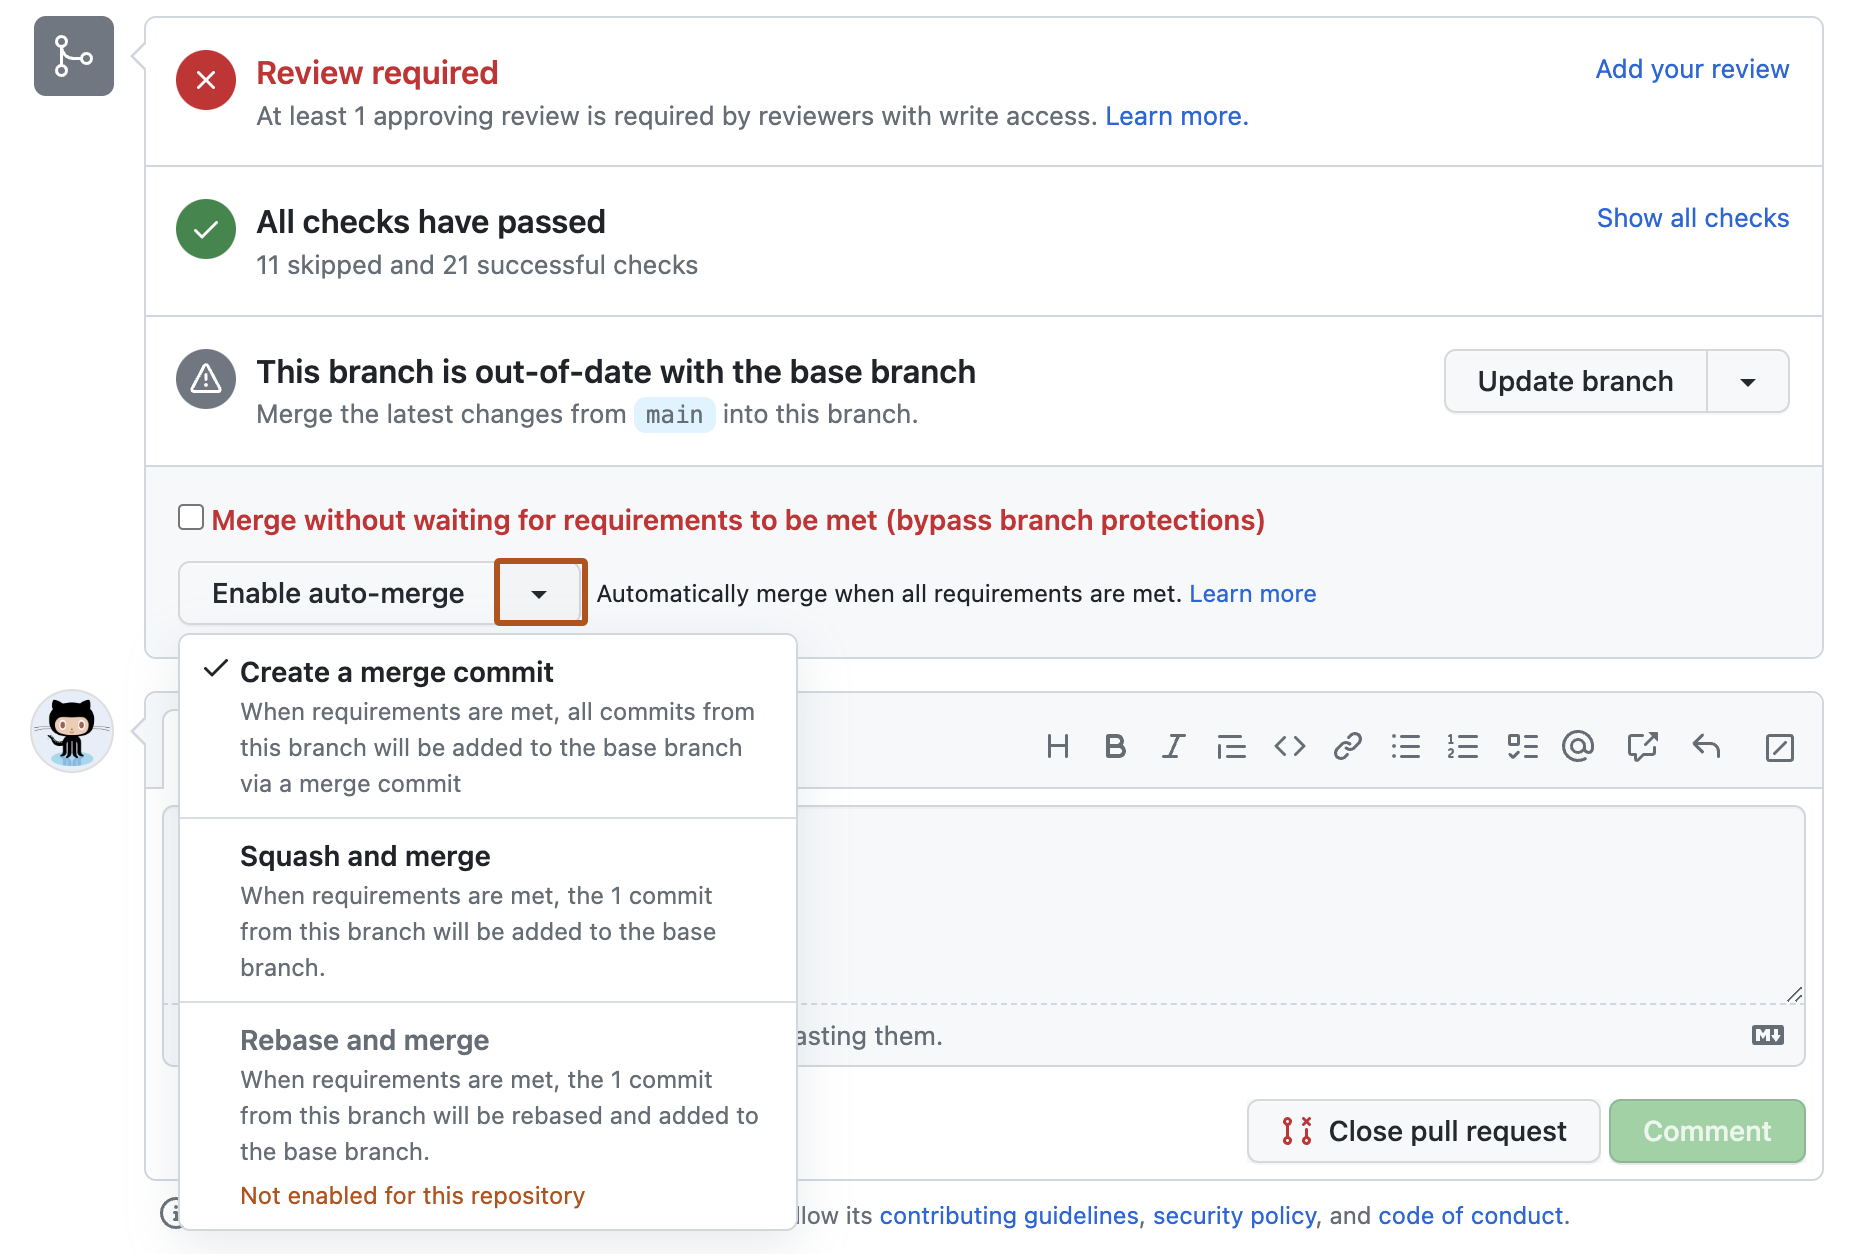 Captura de pantalla del cuadro de combinación de una solicitud de incorporación de cambios. Un botón, etiquetado con un triángulo hacia abajo, está resaltado en naranja oscuro.